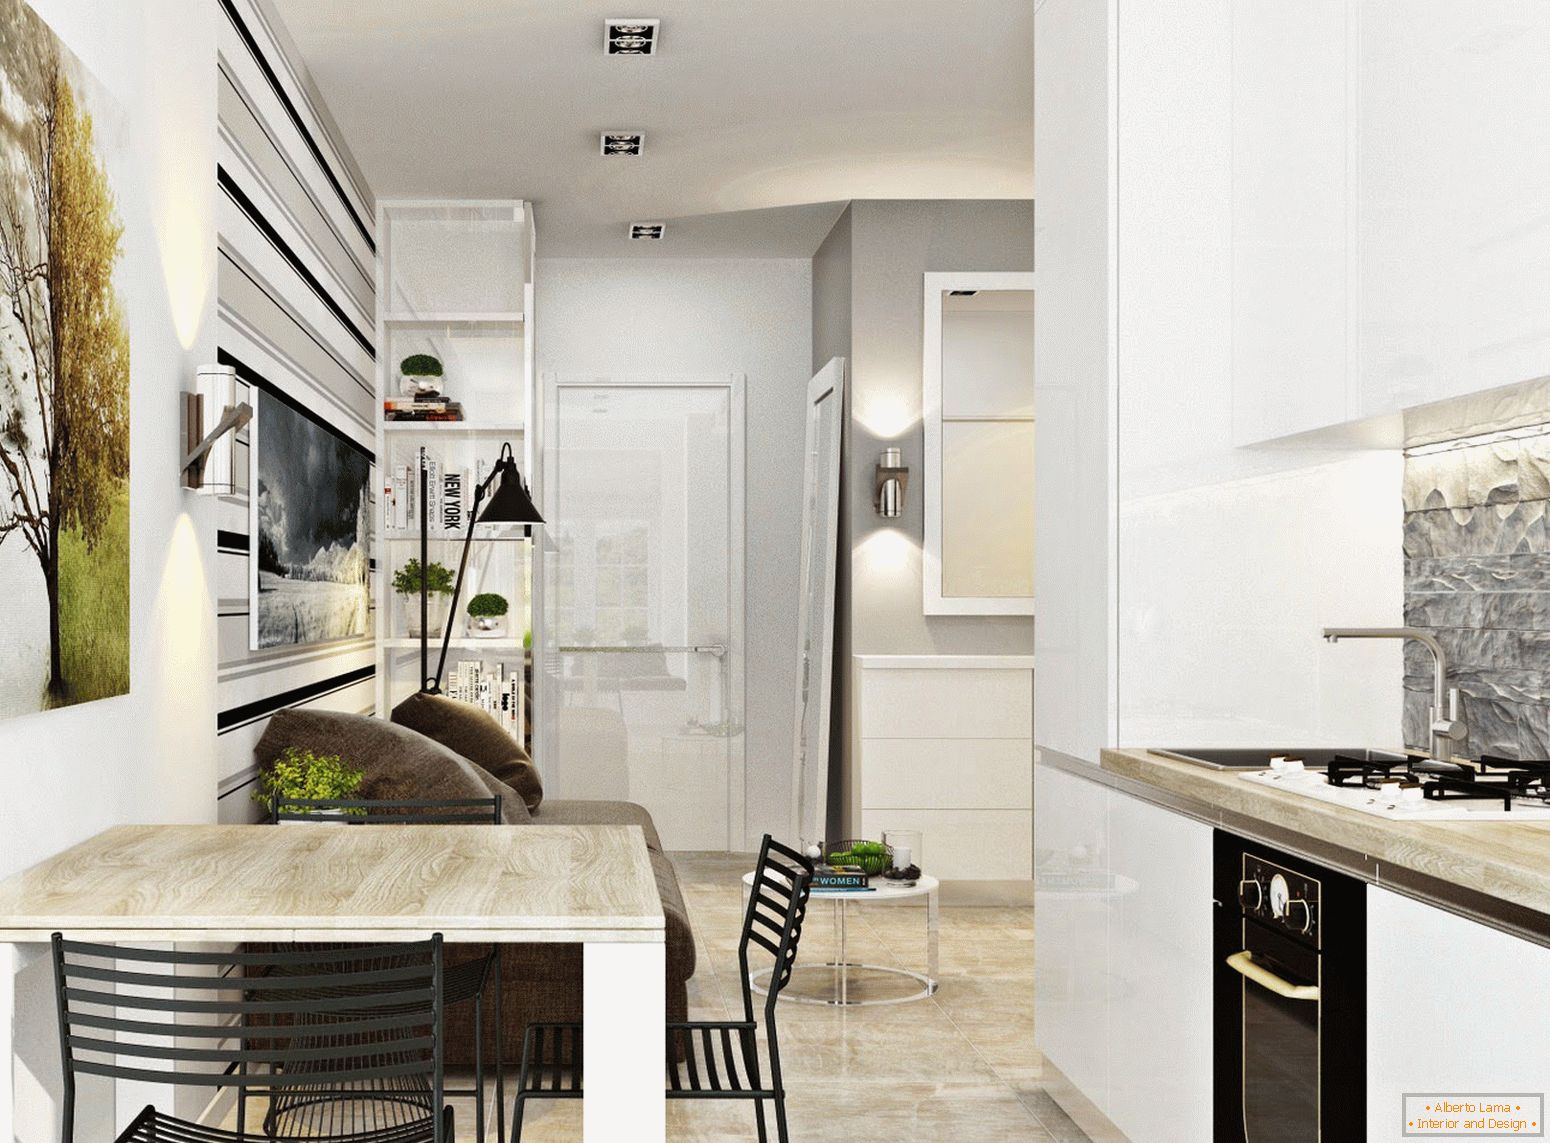 Unutrašnjost kuhinje i blagovaonice u stilu bijelog minimalizma